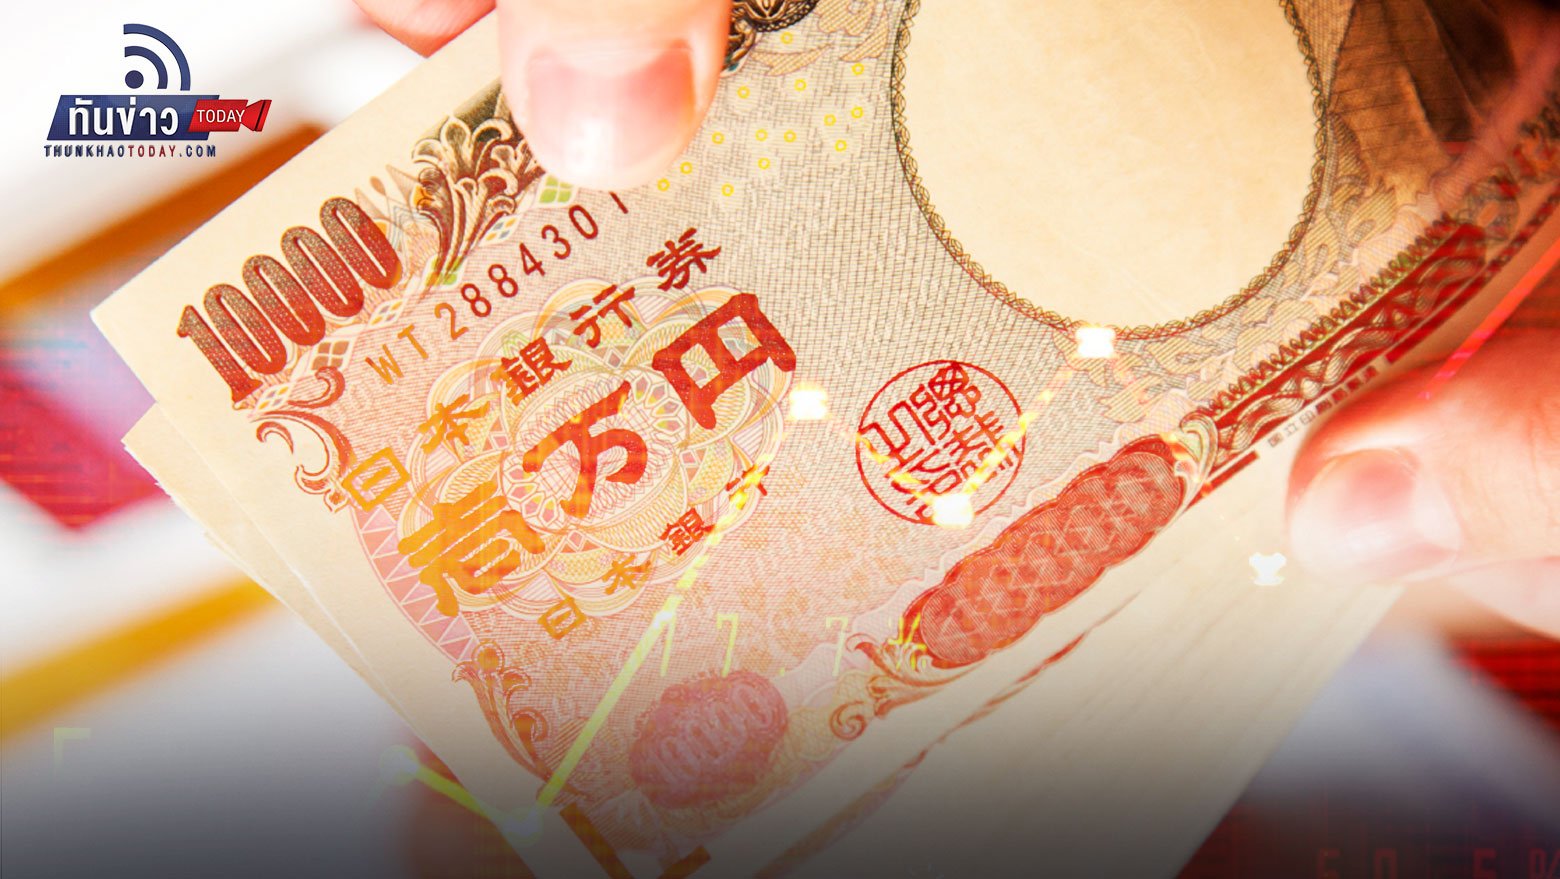 เตือนเสี่ยงเกิด “วิกฤตการเงิน” ในภูมิภาคเอเชีย หากเงินเยนอ่อนค่าแตะ 150  เยนต่อดอลลาร์ | ทันข่าว Today